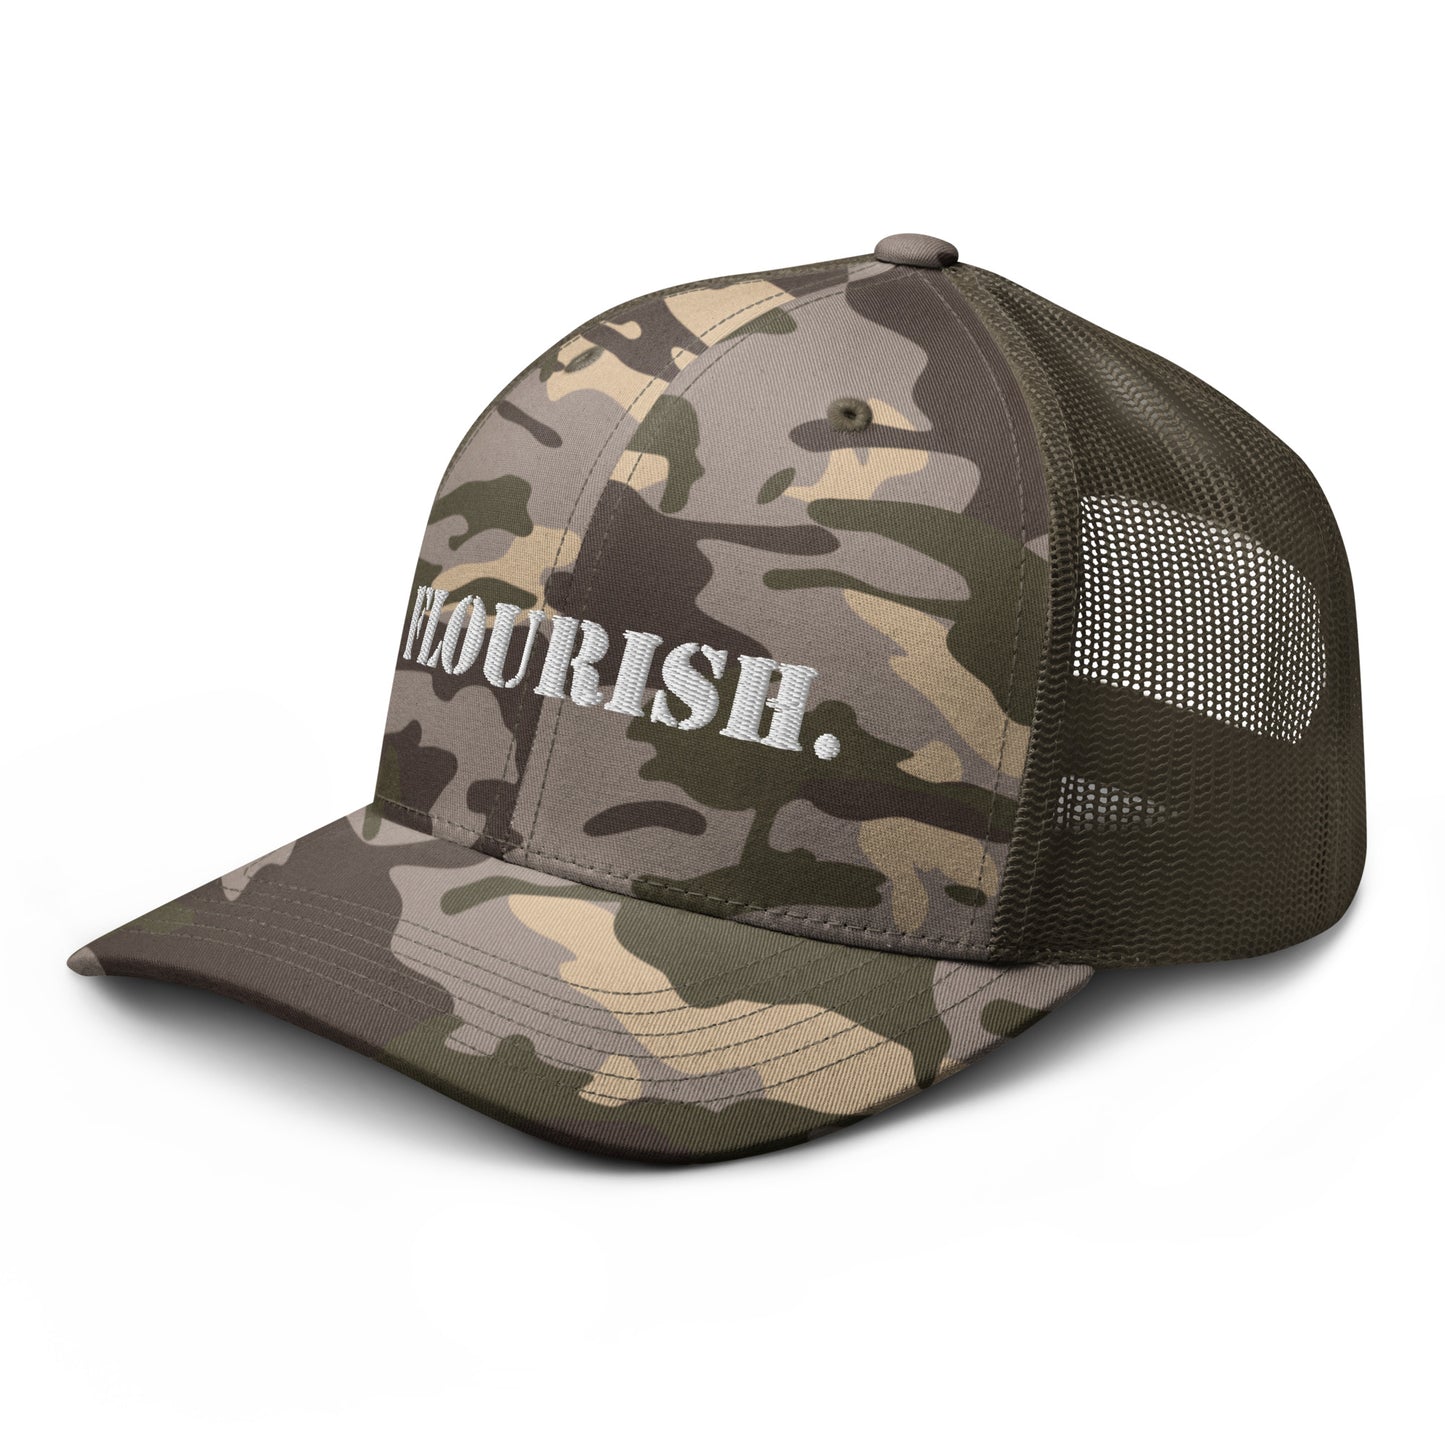 "Flourish." Camouflage Trucker Hat